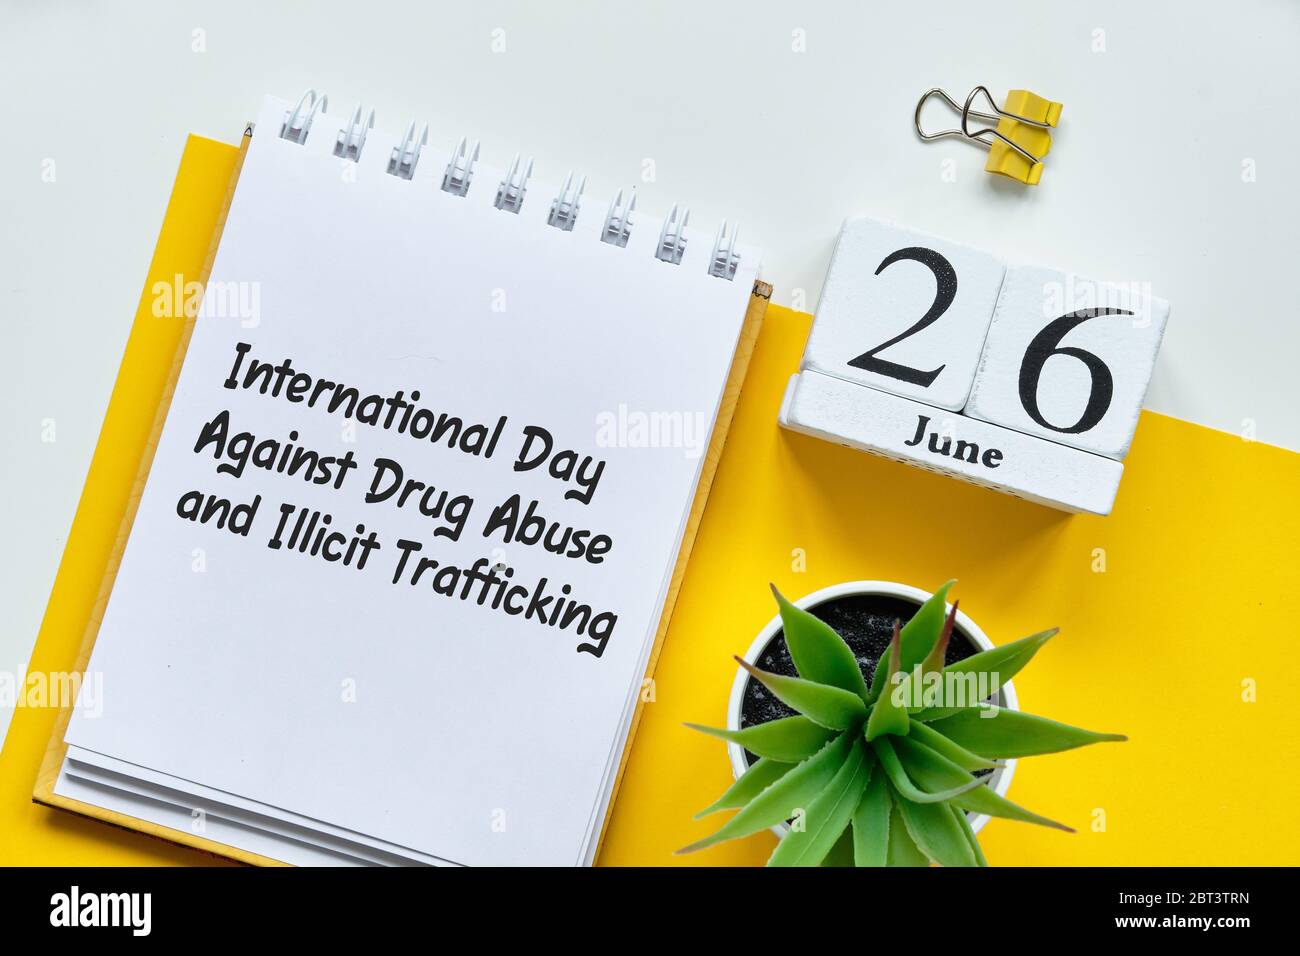 Internationaler Tag gegen Drogenmissbrauch und illegalen Handel 26 26. juni Kalendermonat Konzept auf Holzblöcken. Nahaufnahme. Stockfoto